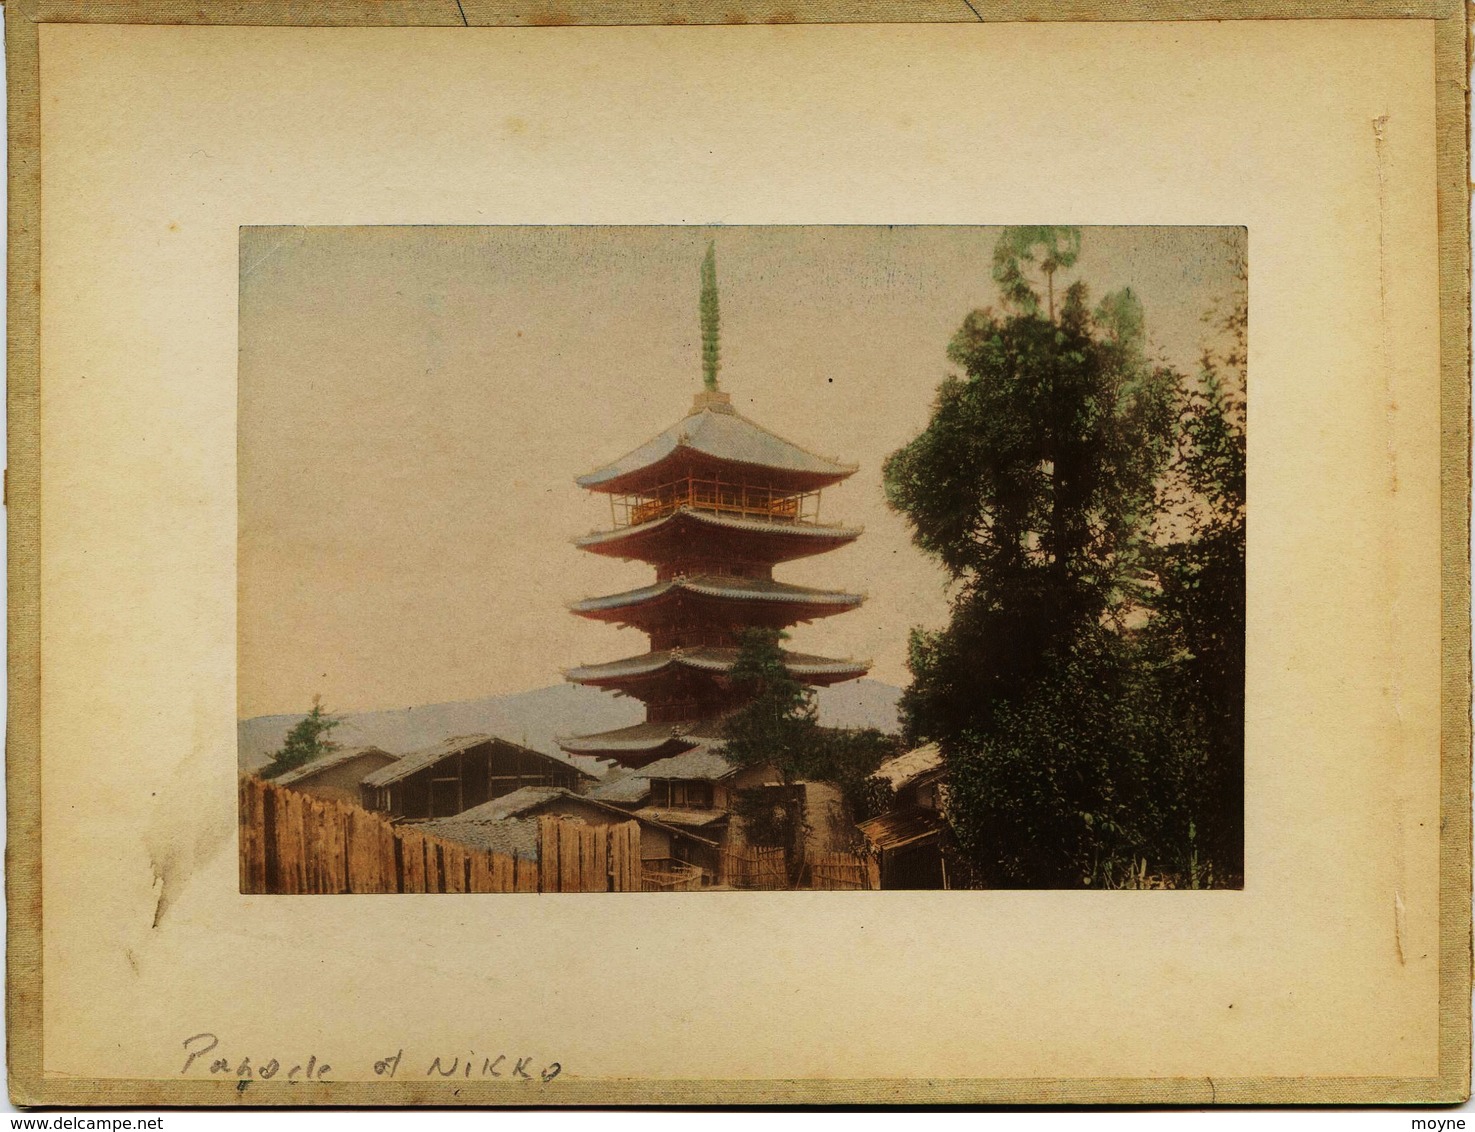 2 Photos Du Japon - XIXéme - Sur Papier Albuminé  - 1)  PAGODA AT NIKKO    2) PARC  AT NIKKO - Old (before 1900)